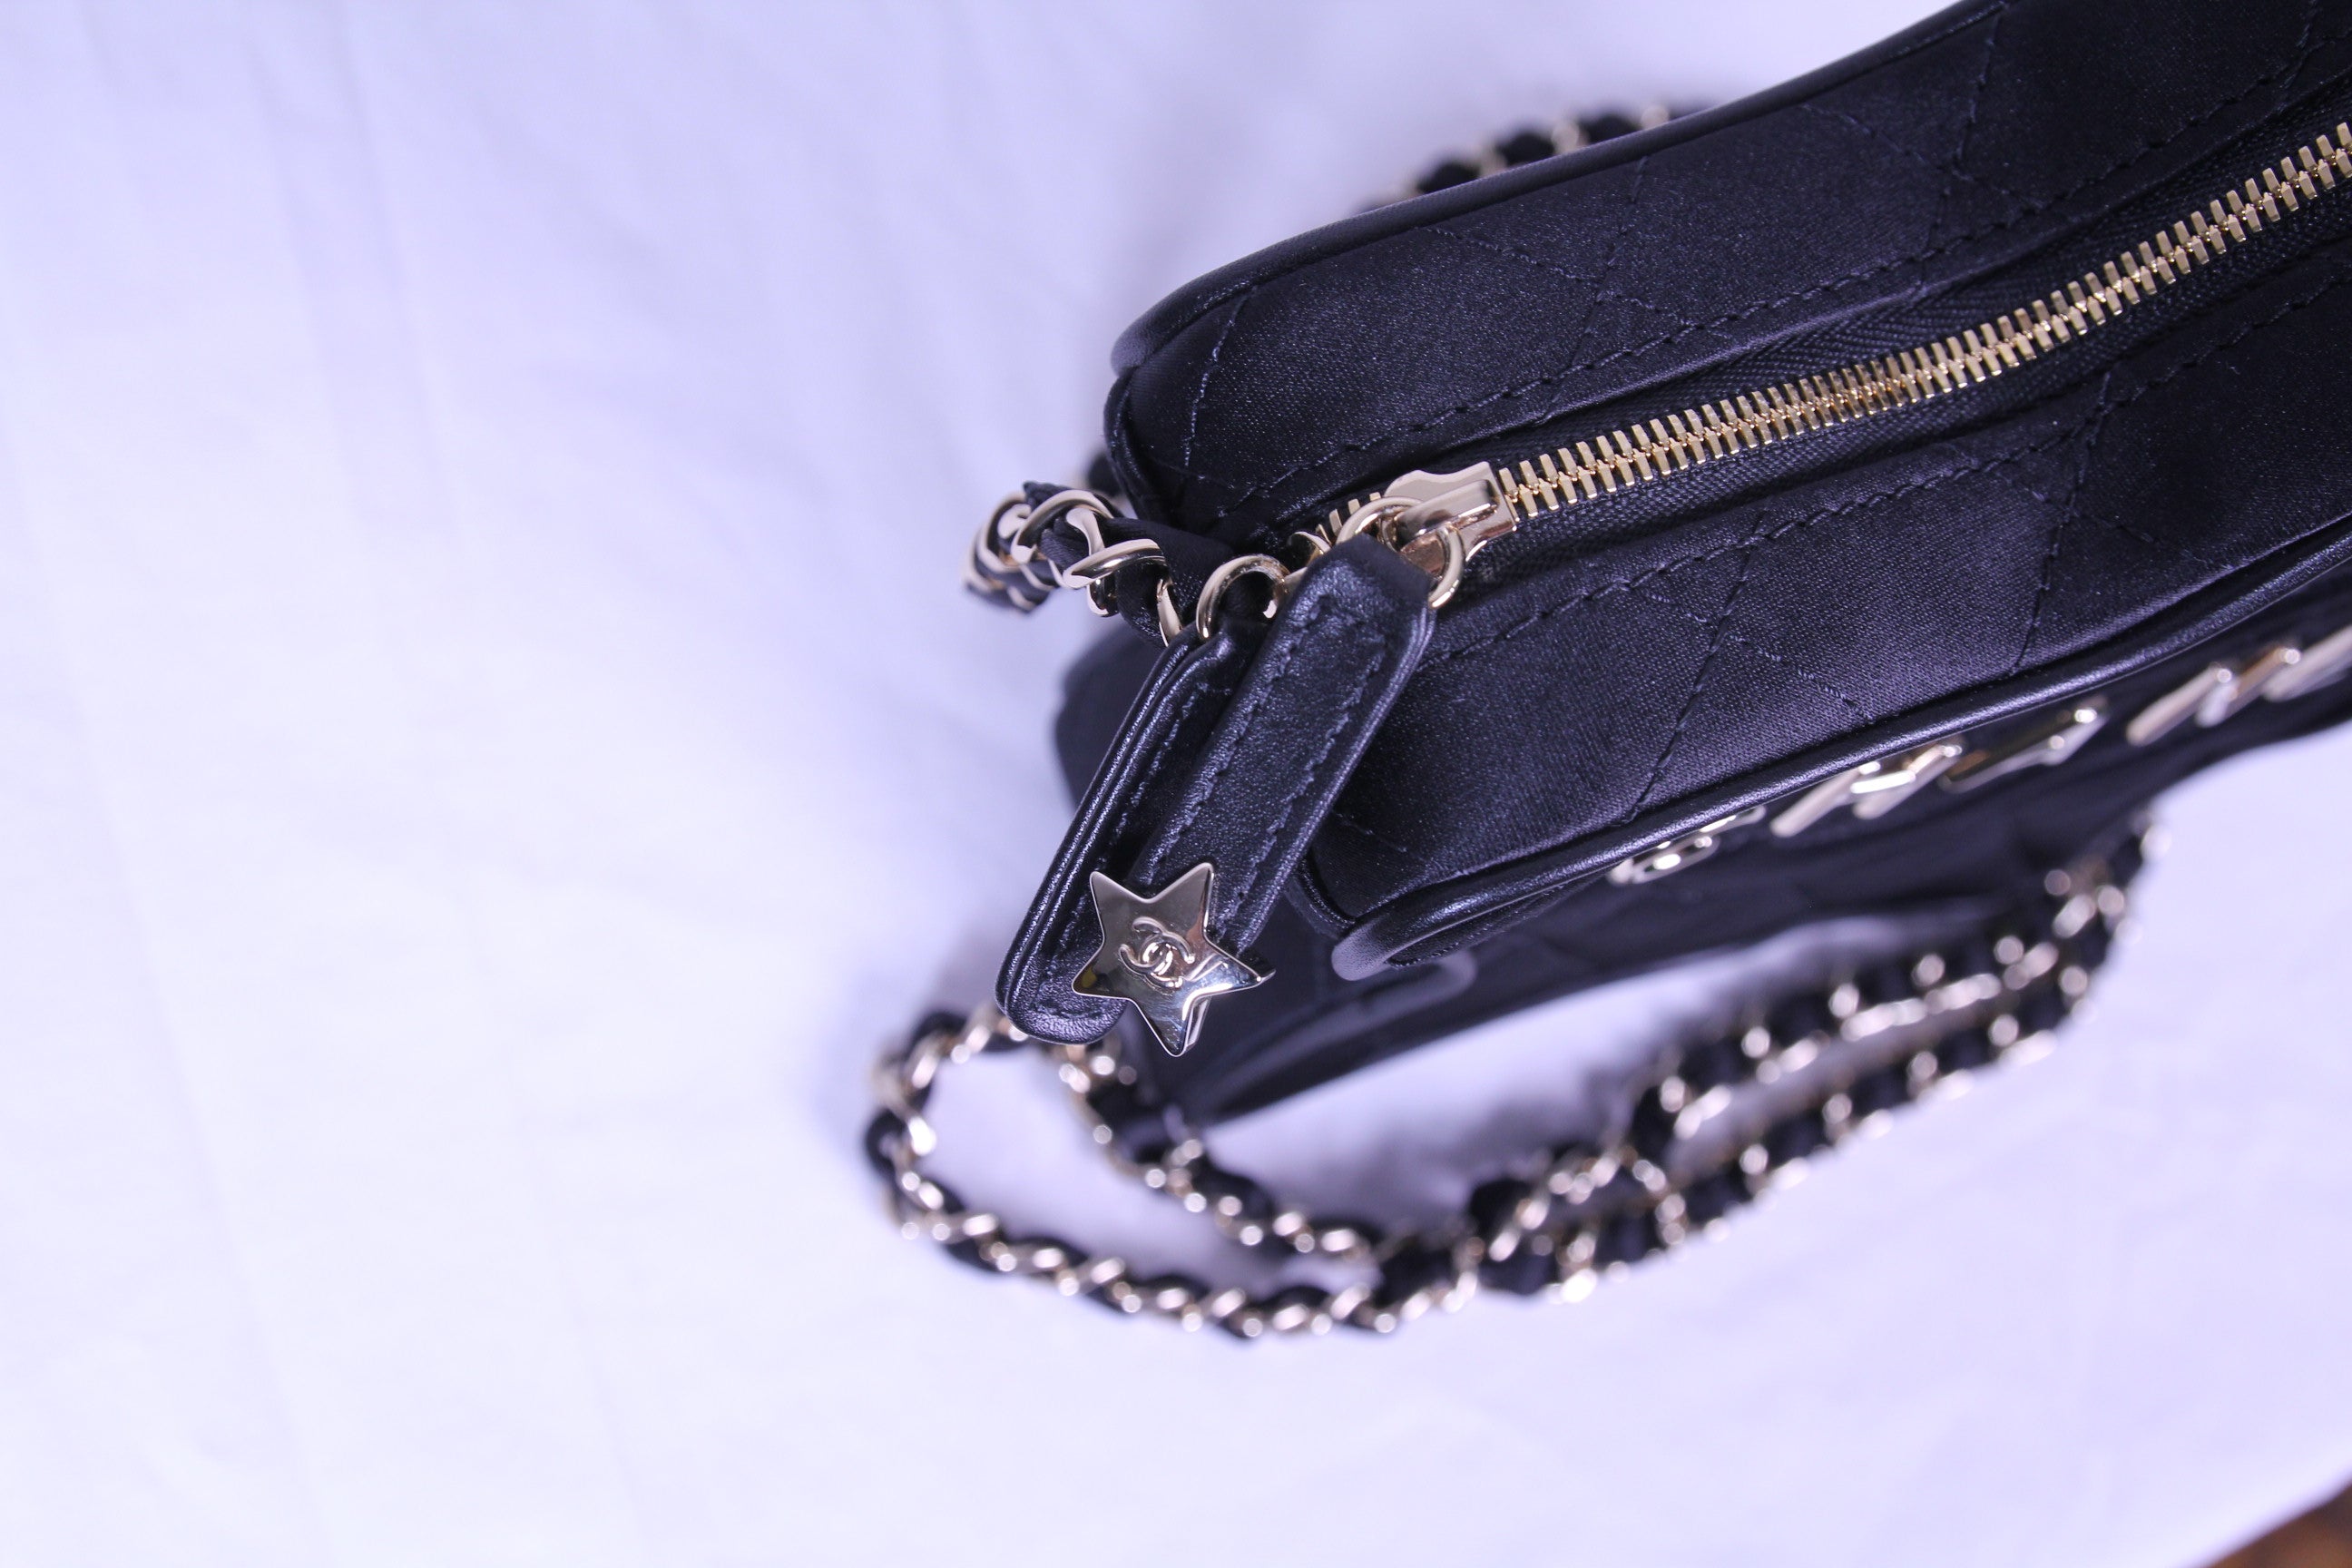 Zipper of Chanel star handbag in finished in black satin